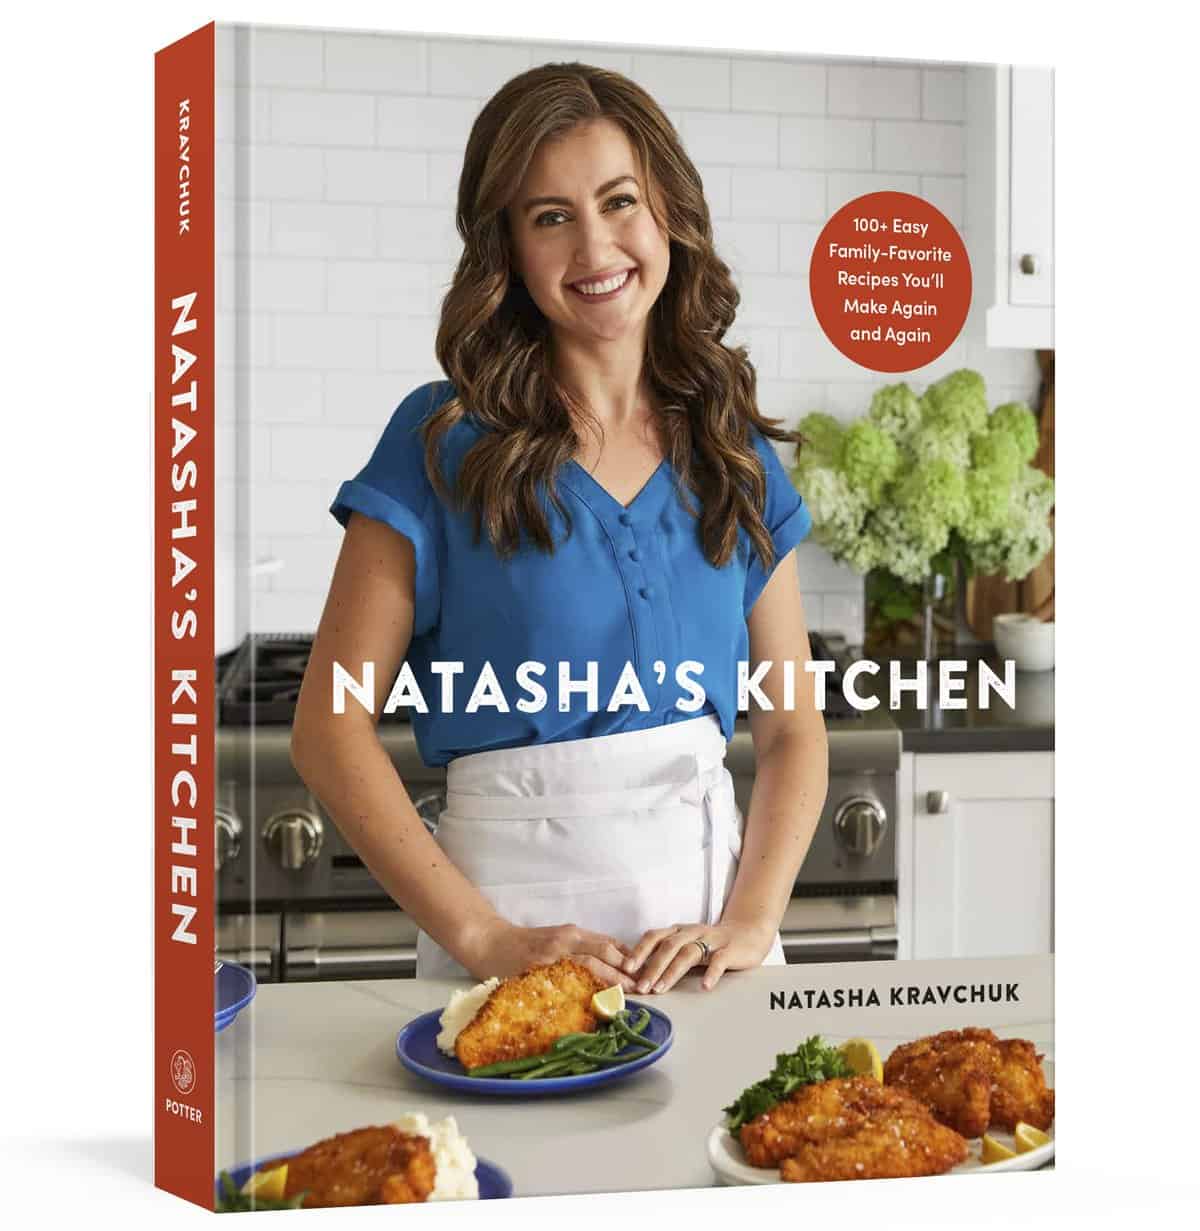 Natashas Kitchen cookbook